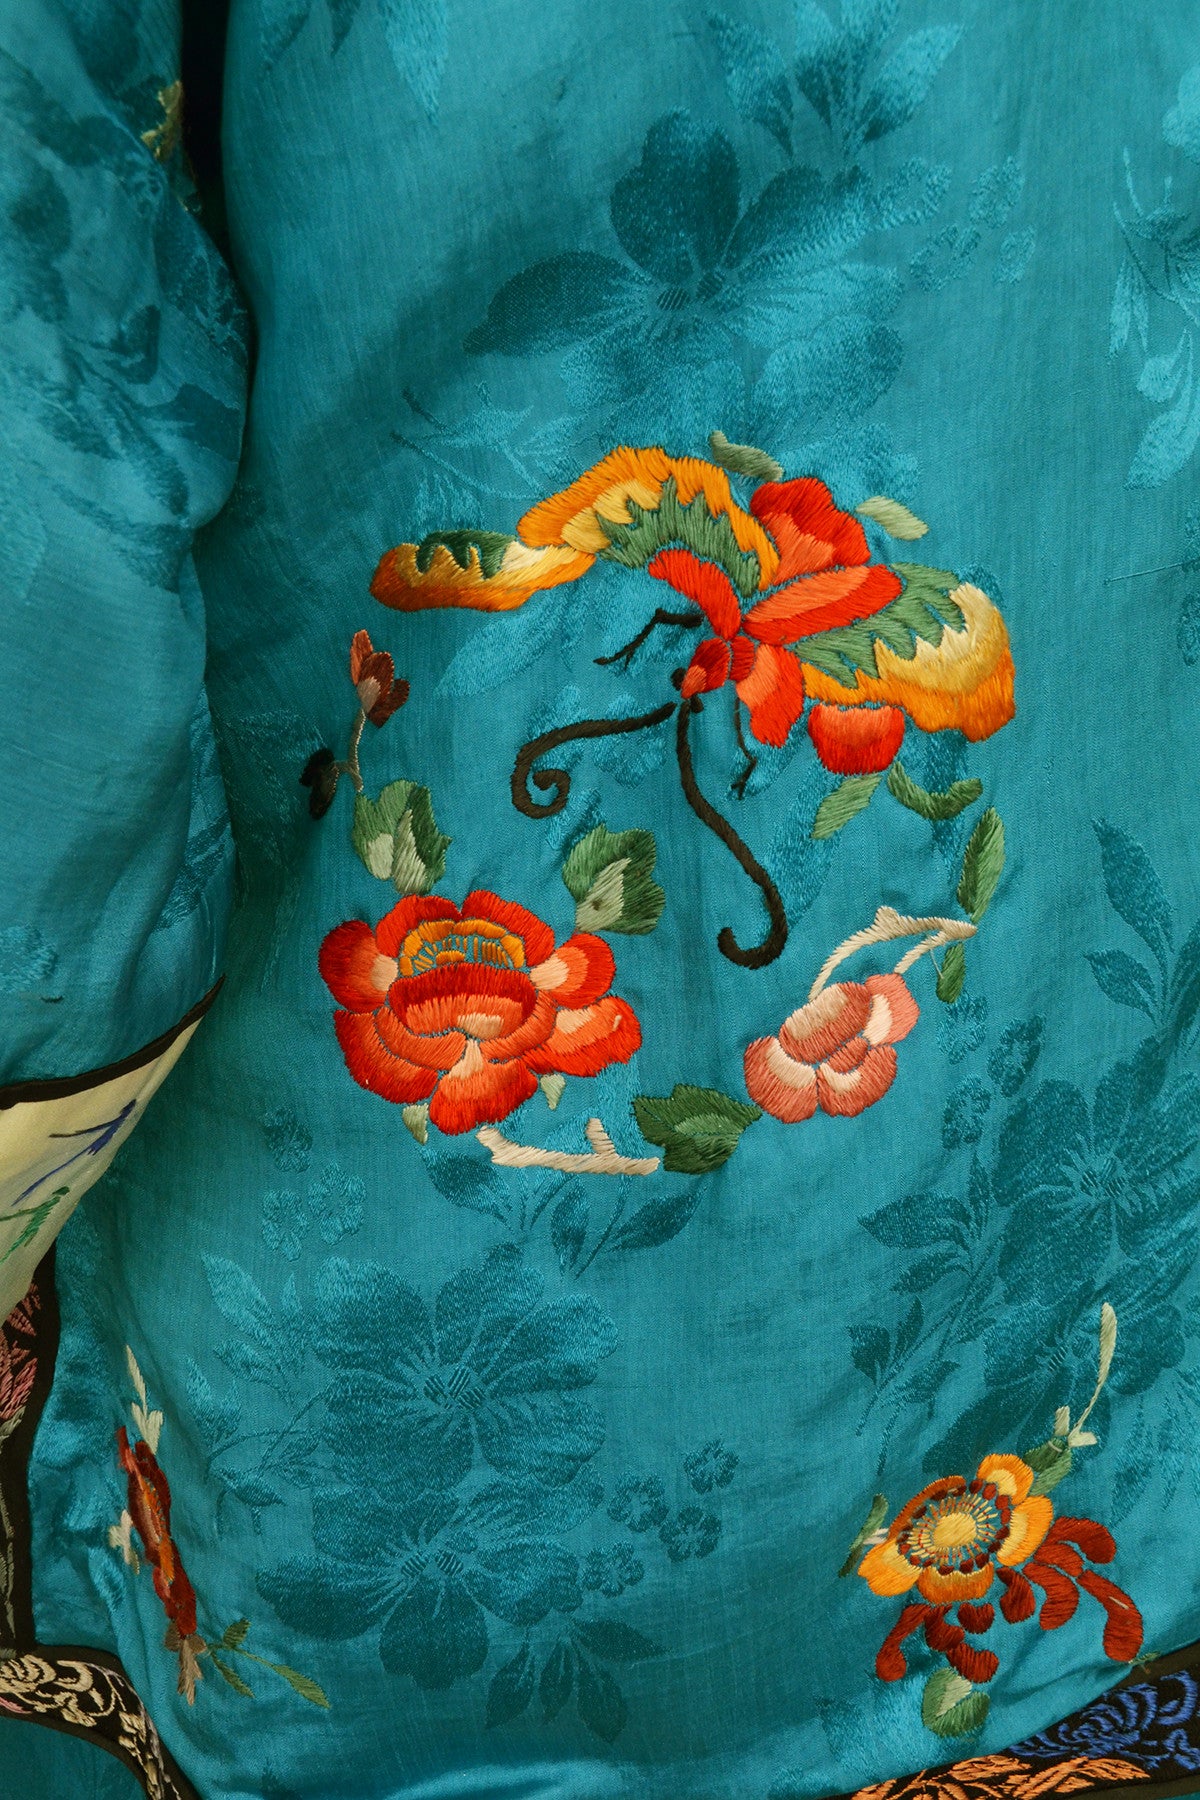 1930s Embroidered Chinese Silk Pajamas Loungewear Beach Pajamas Wide leg Pants